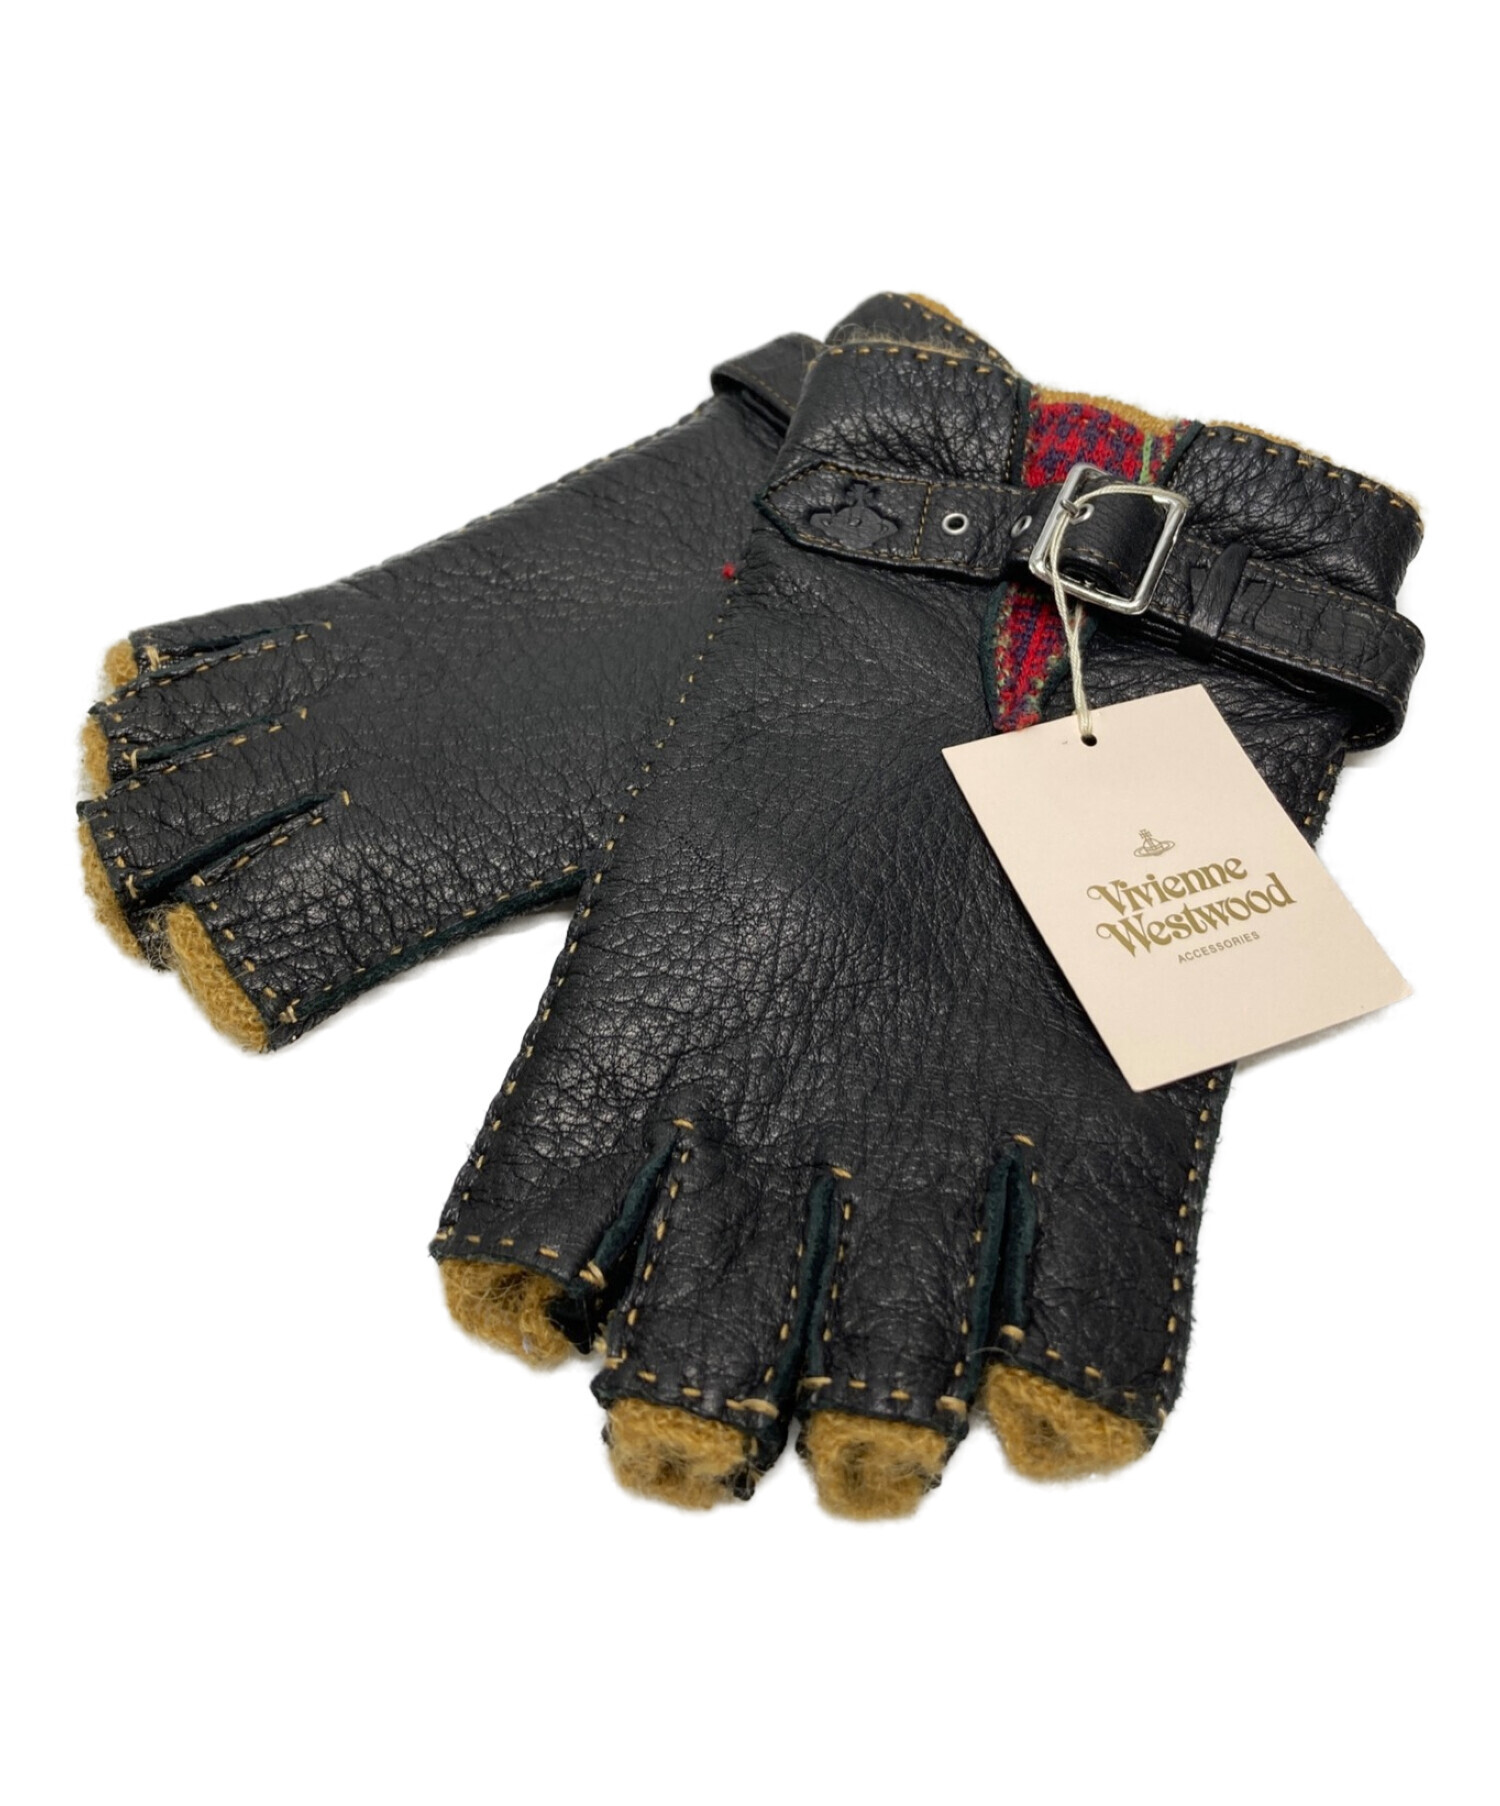 ヴィヴィアンウエストウッド 本革手袋 Vivienne Westwood - 手袋